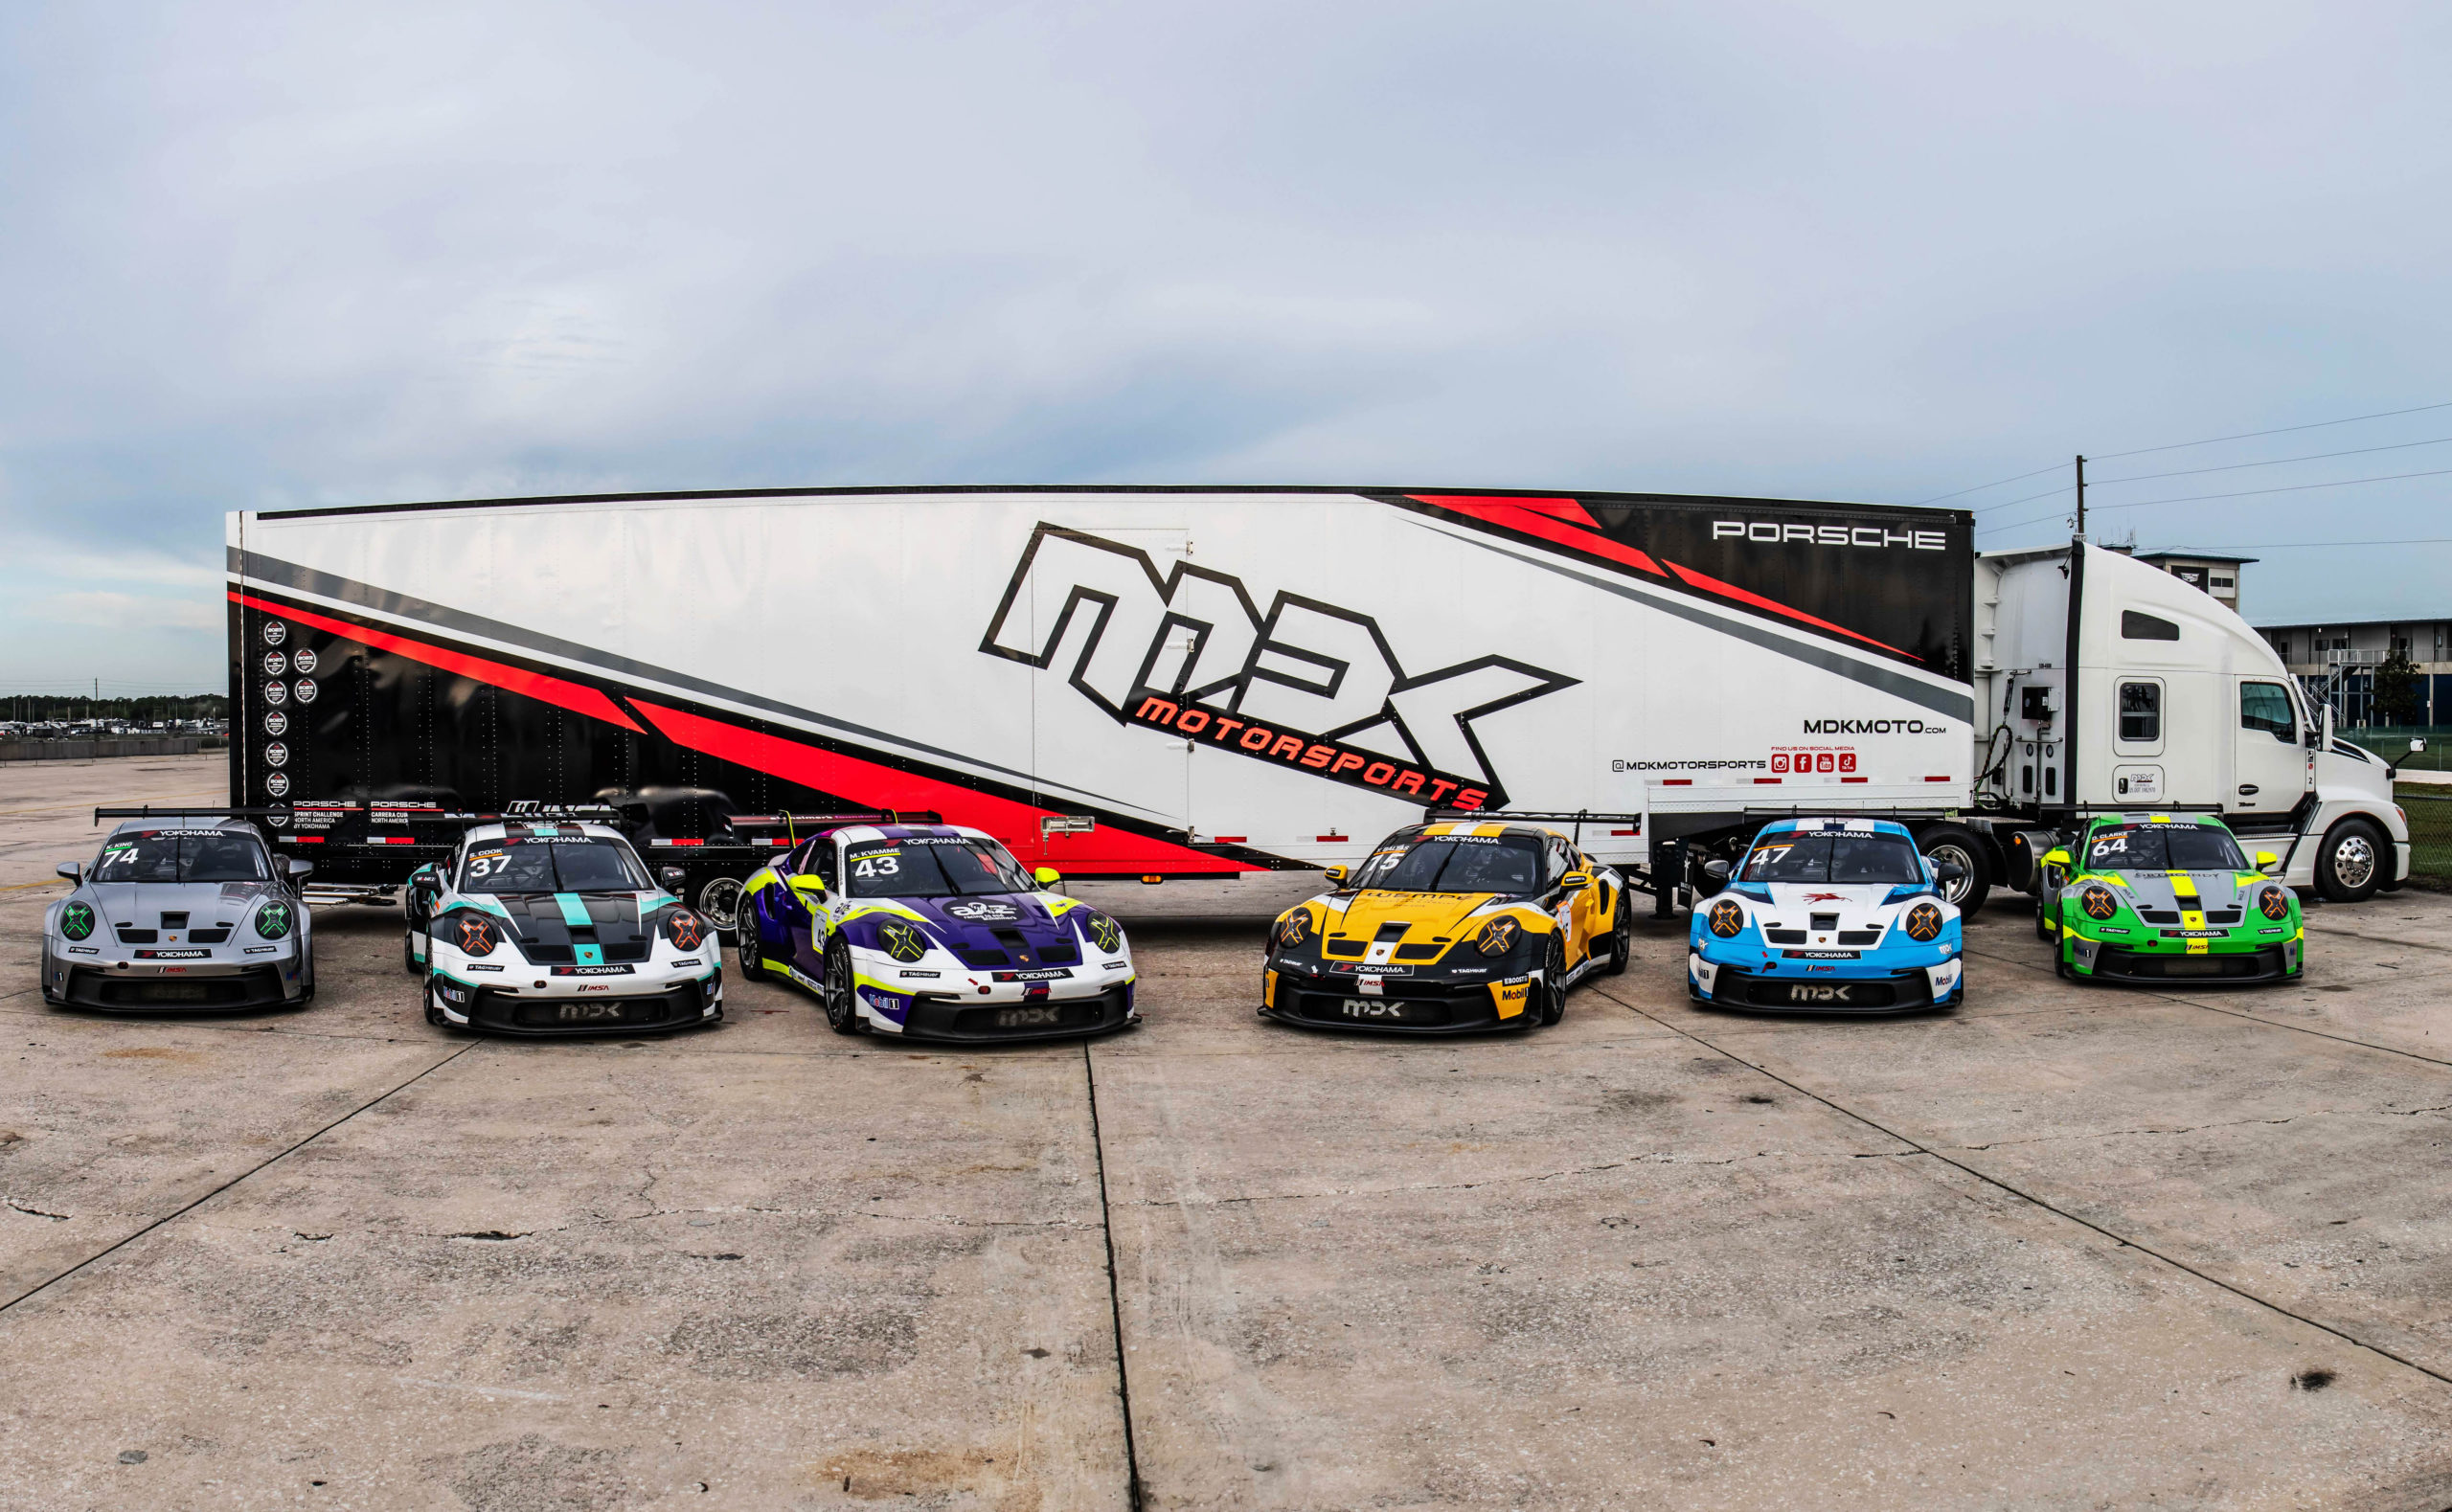 Six-car squad for MDK Motorsports’ Porsche Carrera Cup assault